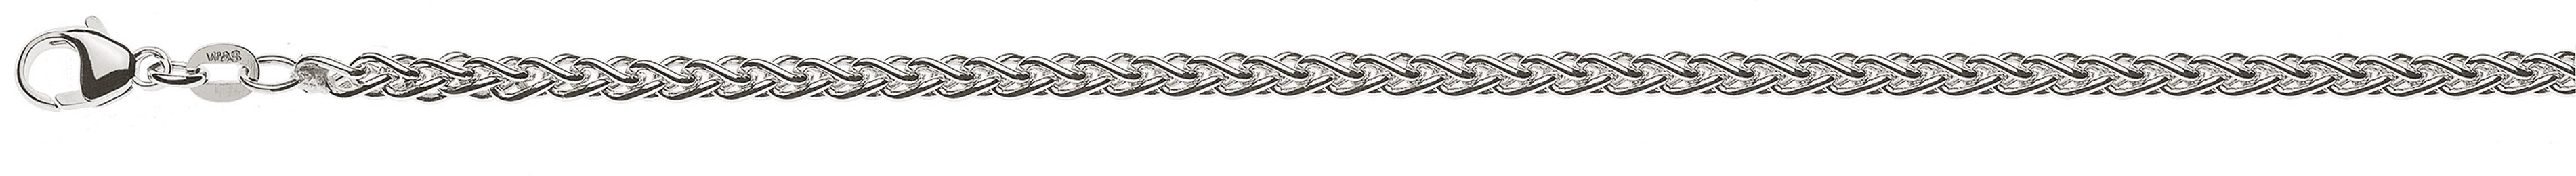 AURONOS Prestige Necklace white gold 18K cable chain 60cm 3.3mm